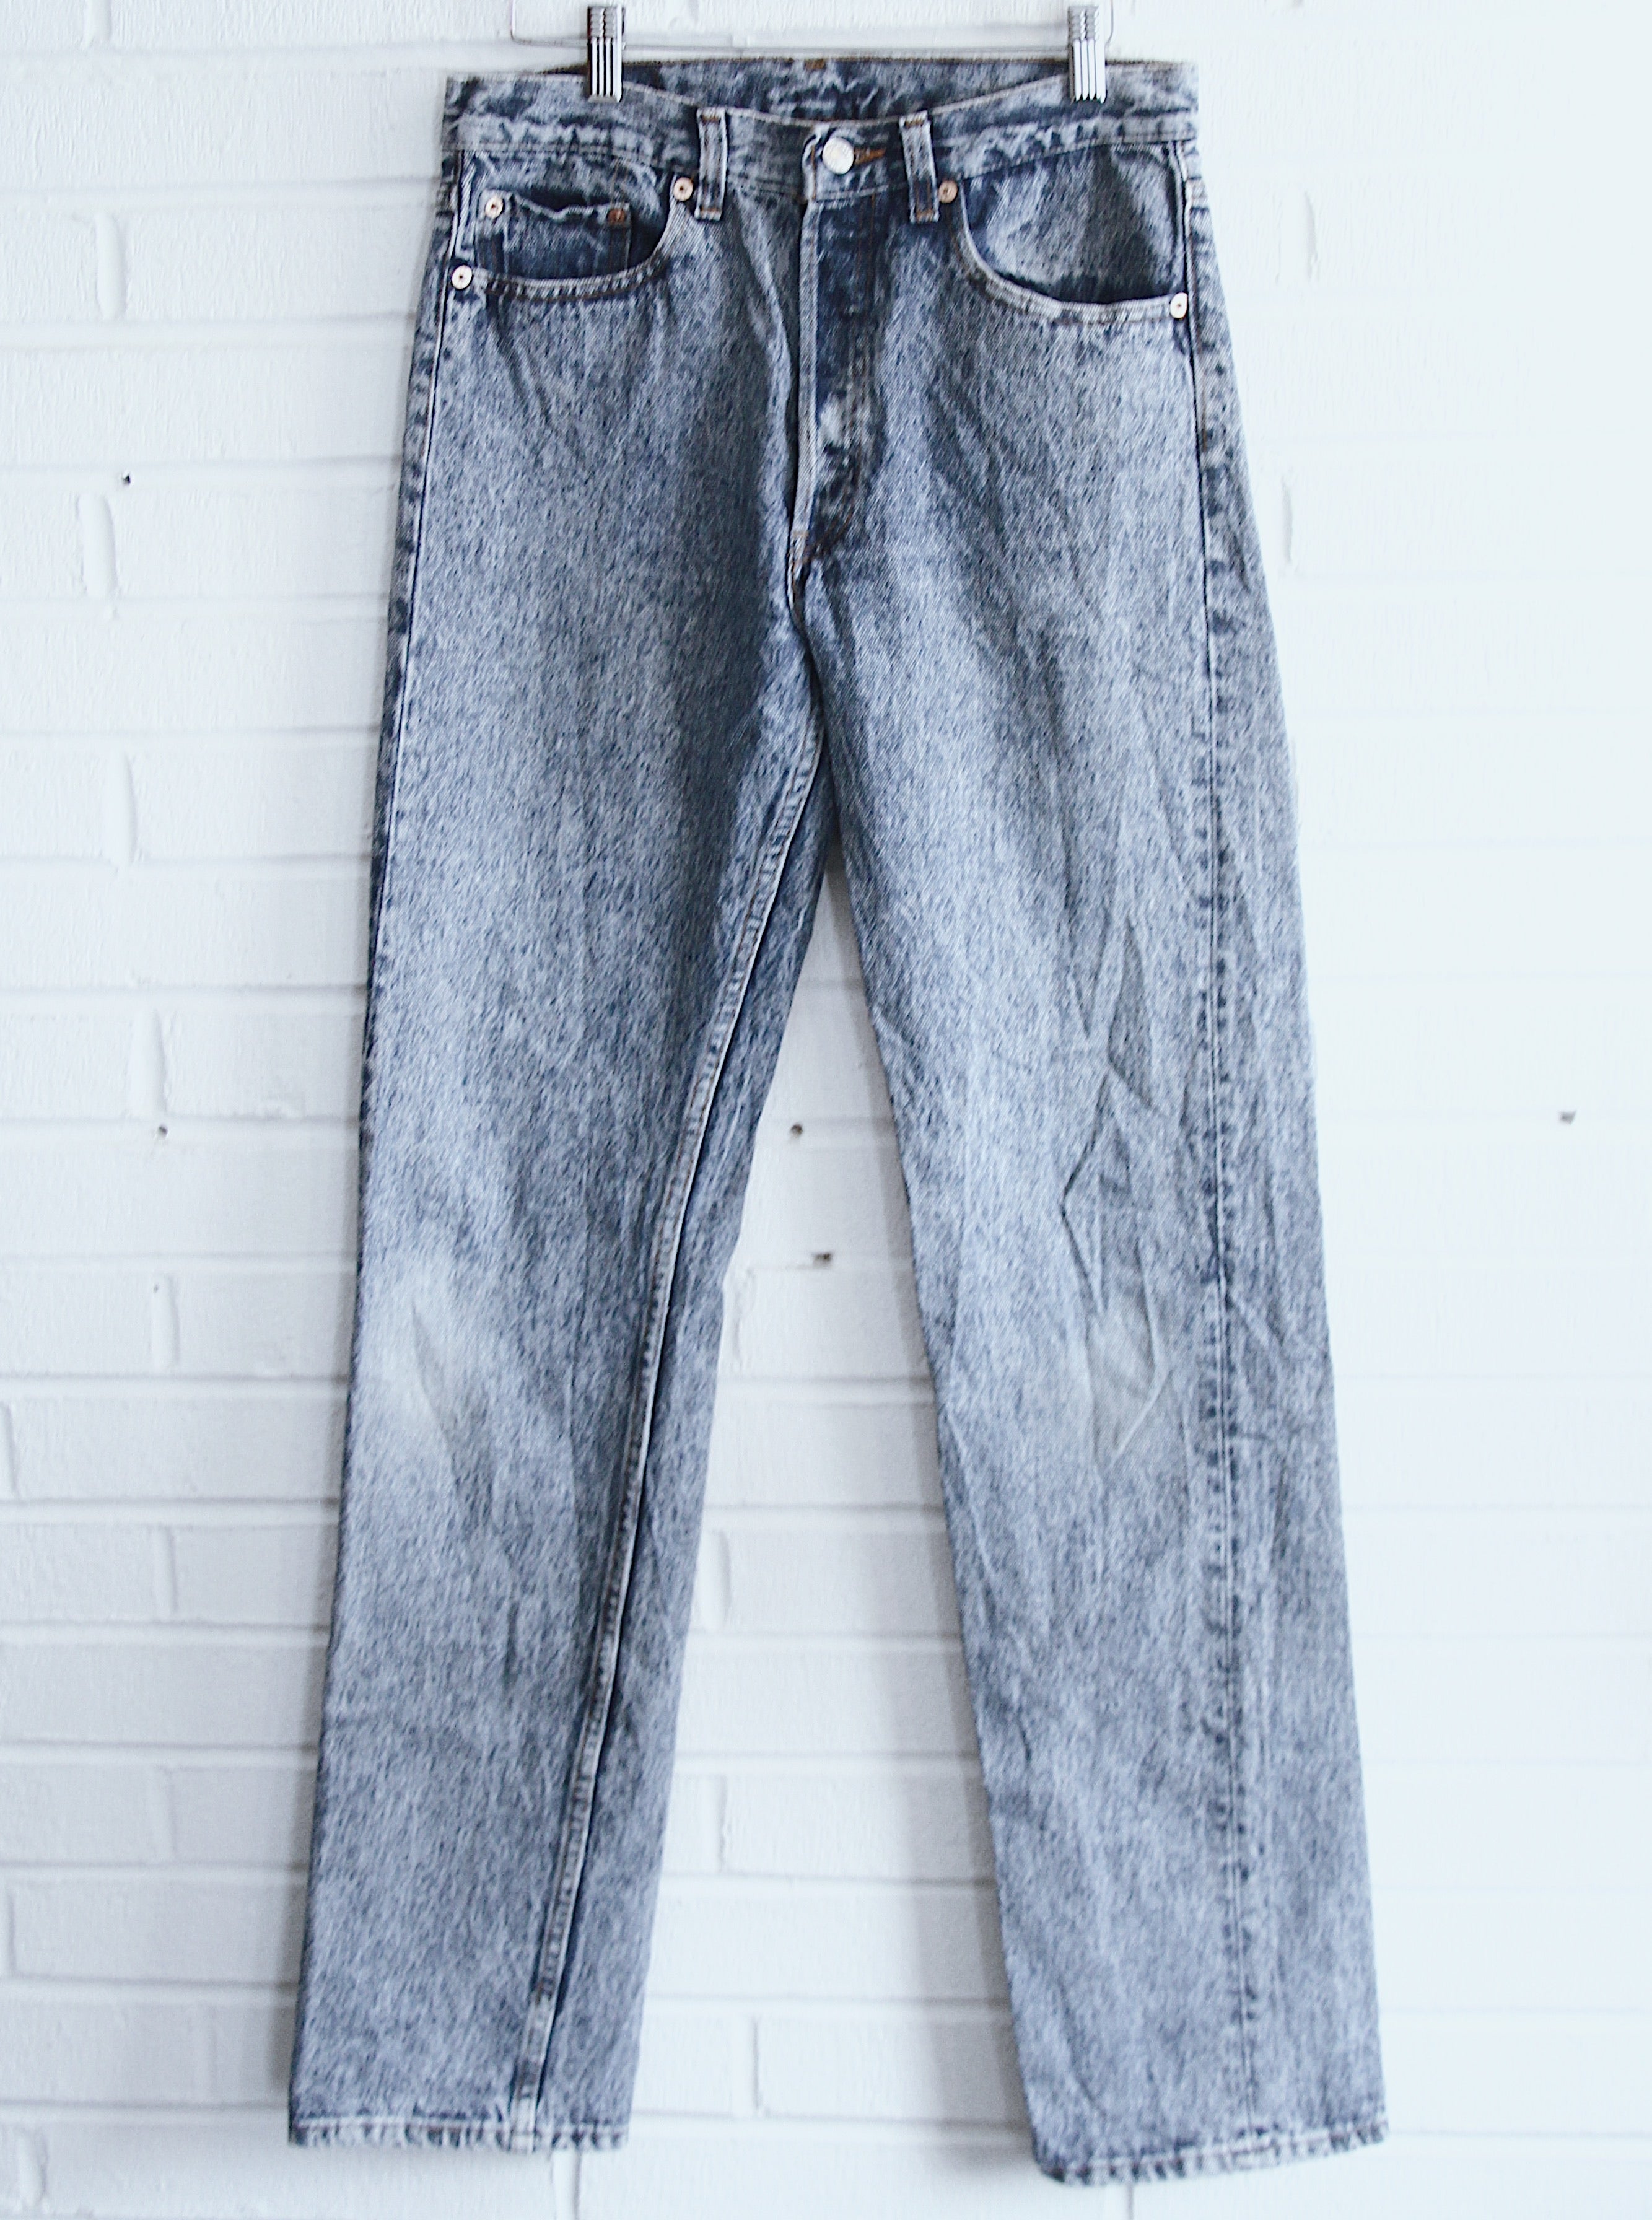 Vintage Acid Wash 501’s Jeans